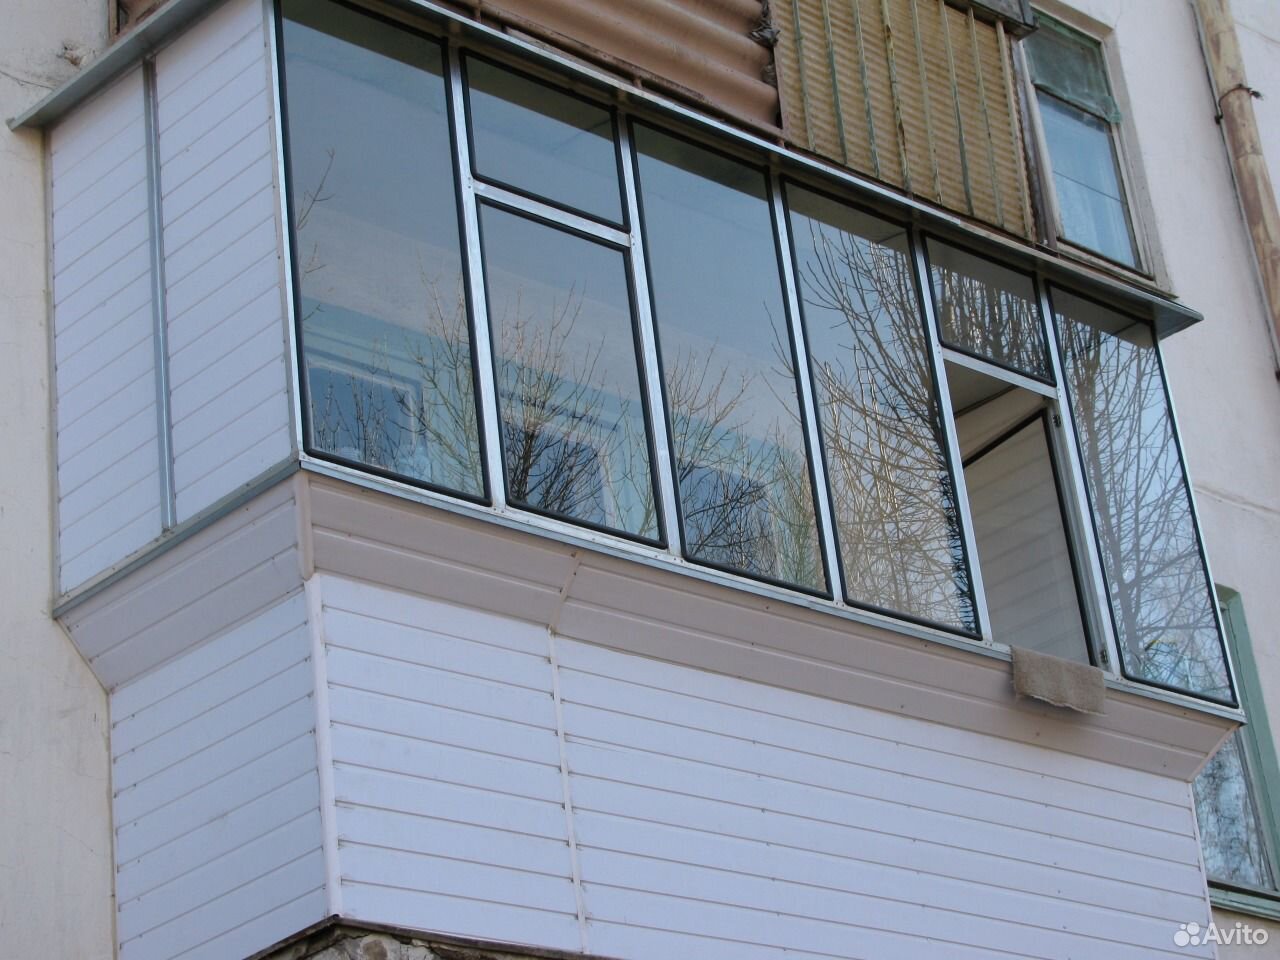 Остекление балконов, лоджий - балконы, лоджии в красноярске.